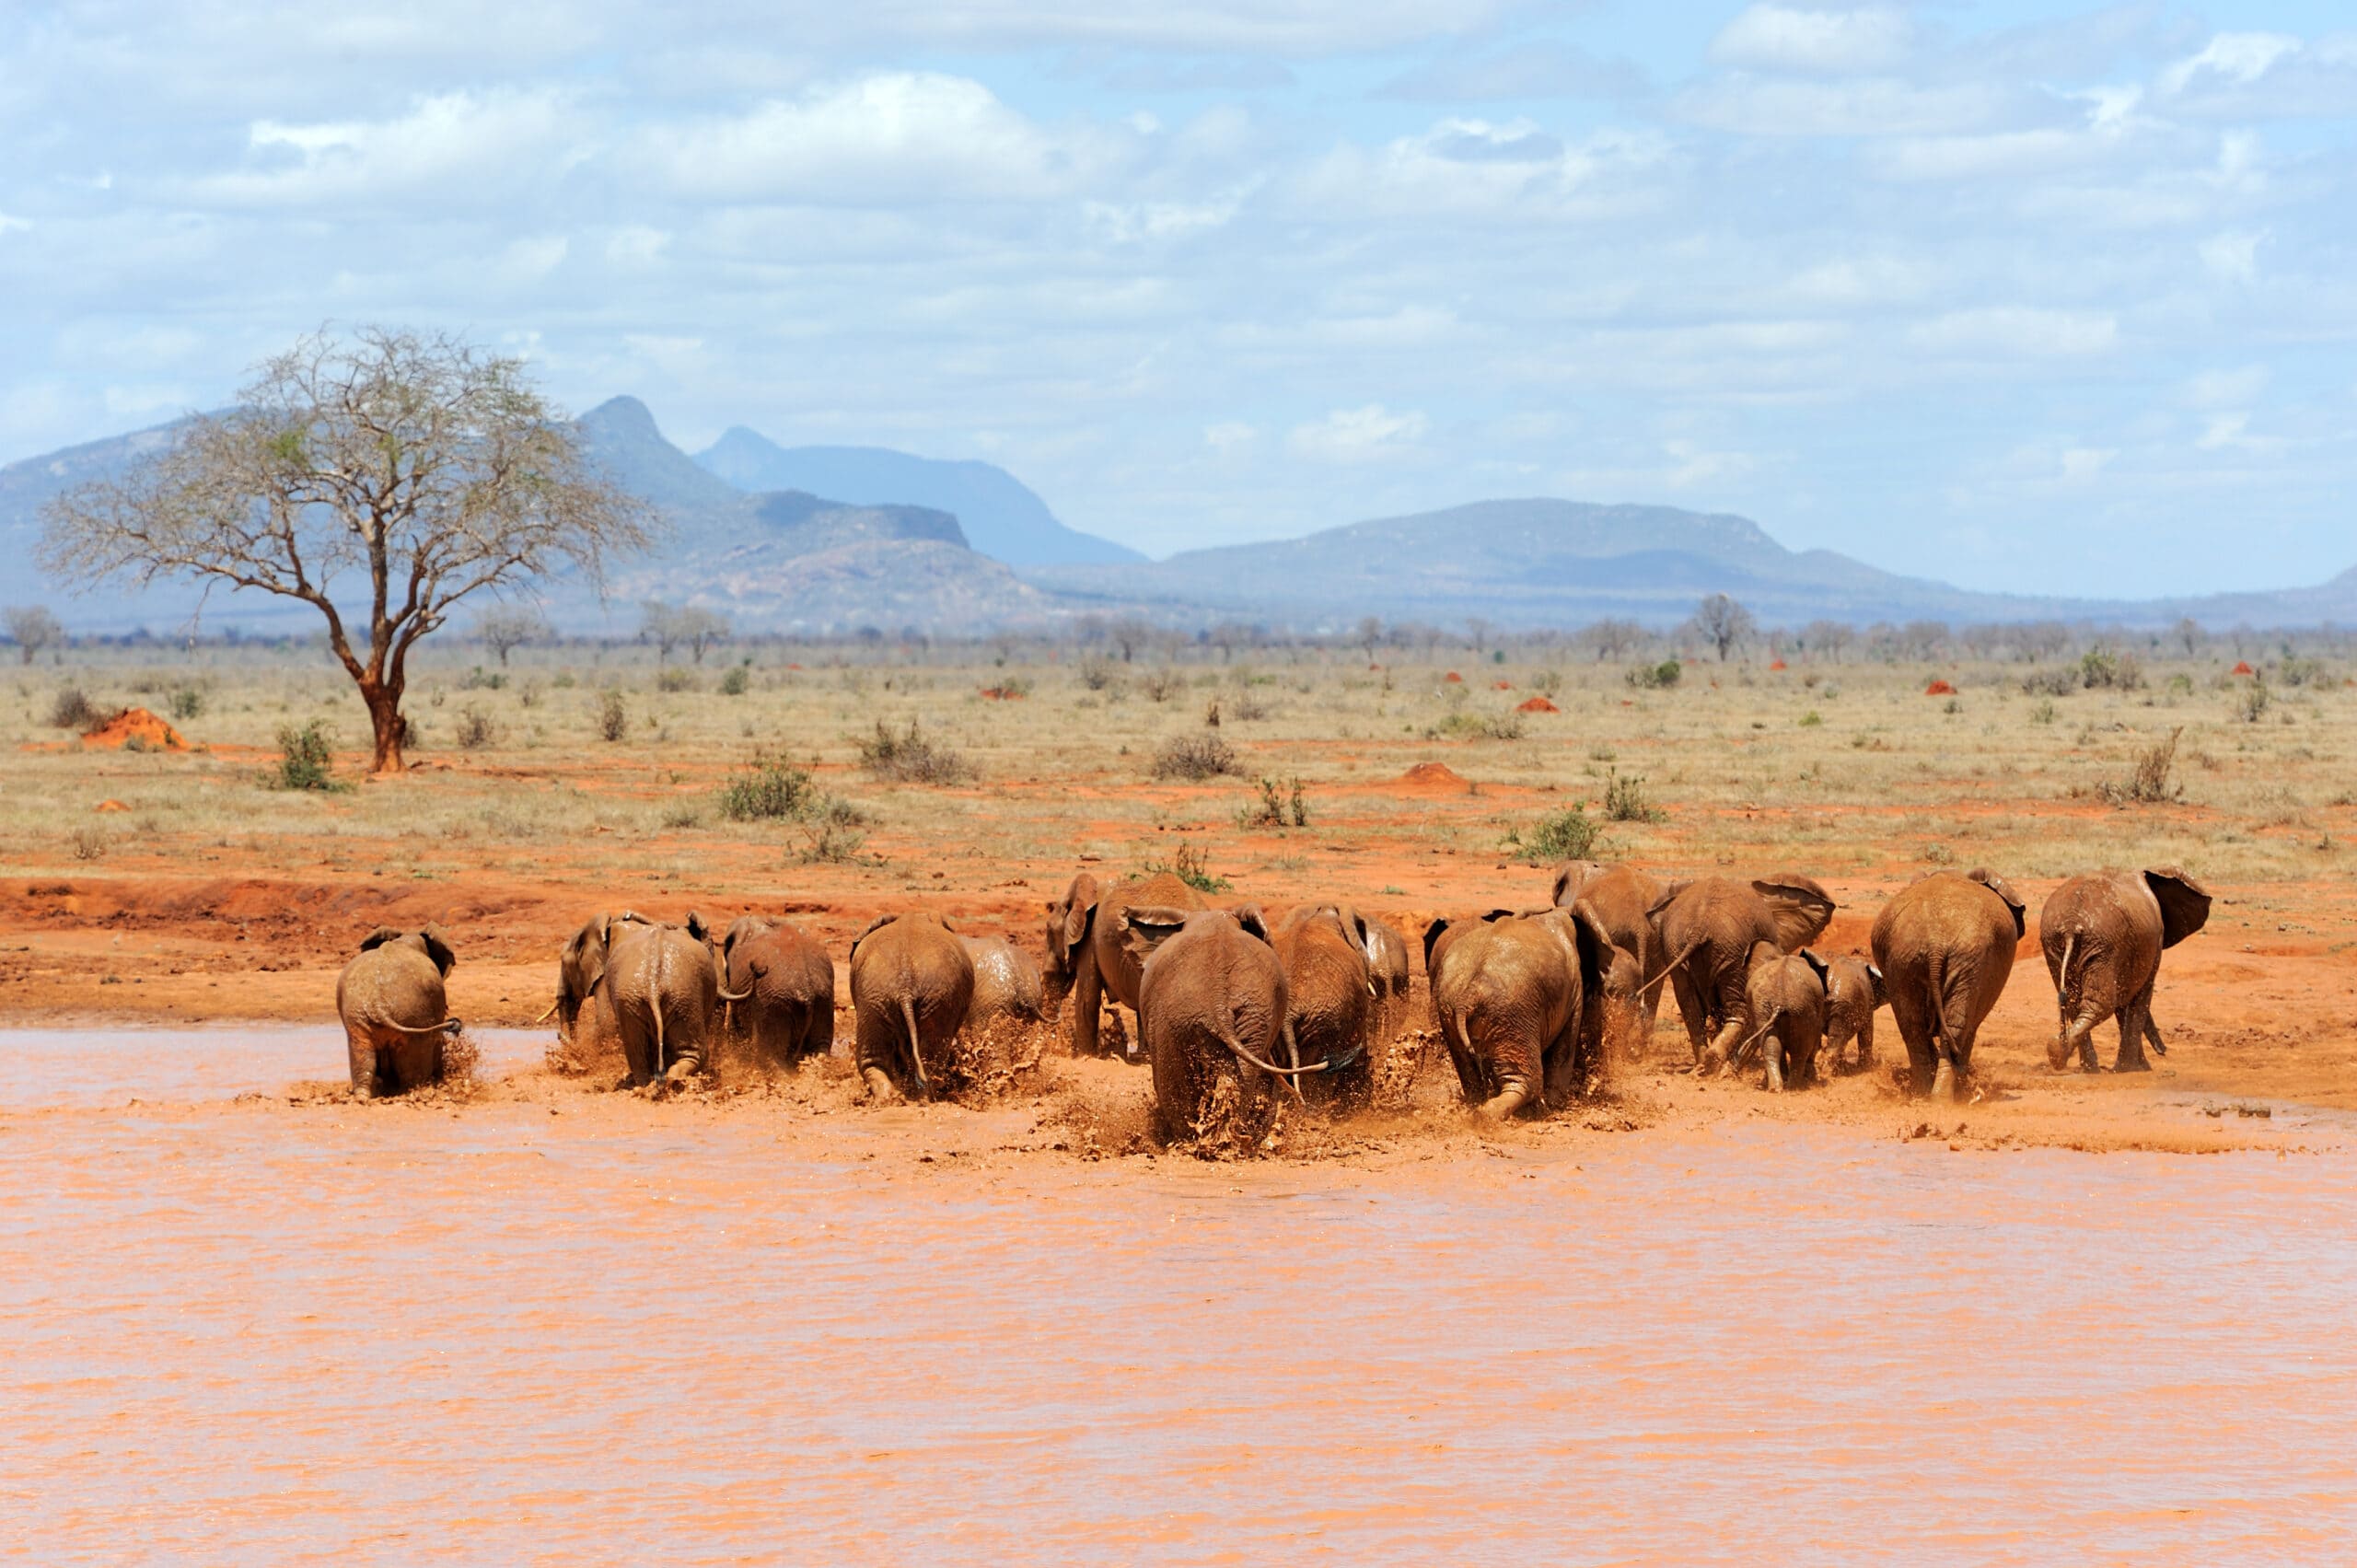 elephant in national park of kenya 2021 08 26 15 55 46 utc scaled